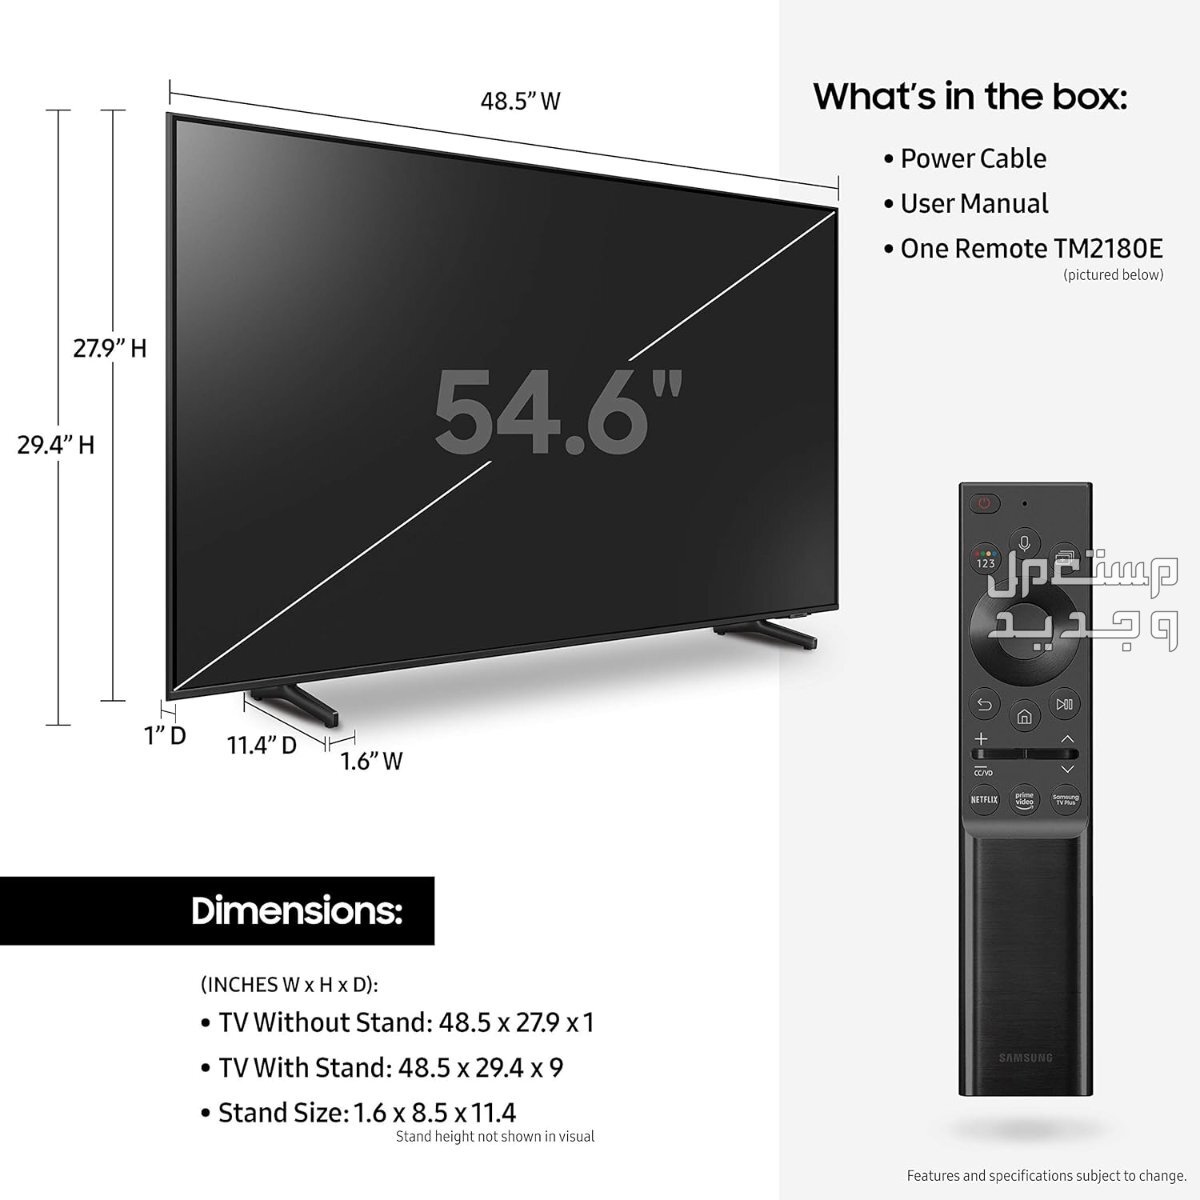 انواع تلفزيون 55 بوصة بالمواصفات والصور والأسعار في اليَمَن تلفزيون 55 بوصة ماركة سامسونج موديل QA55Q60ABUXUM